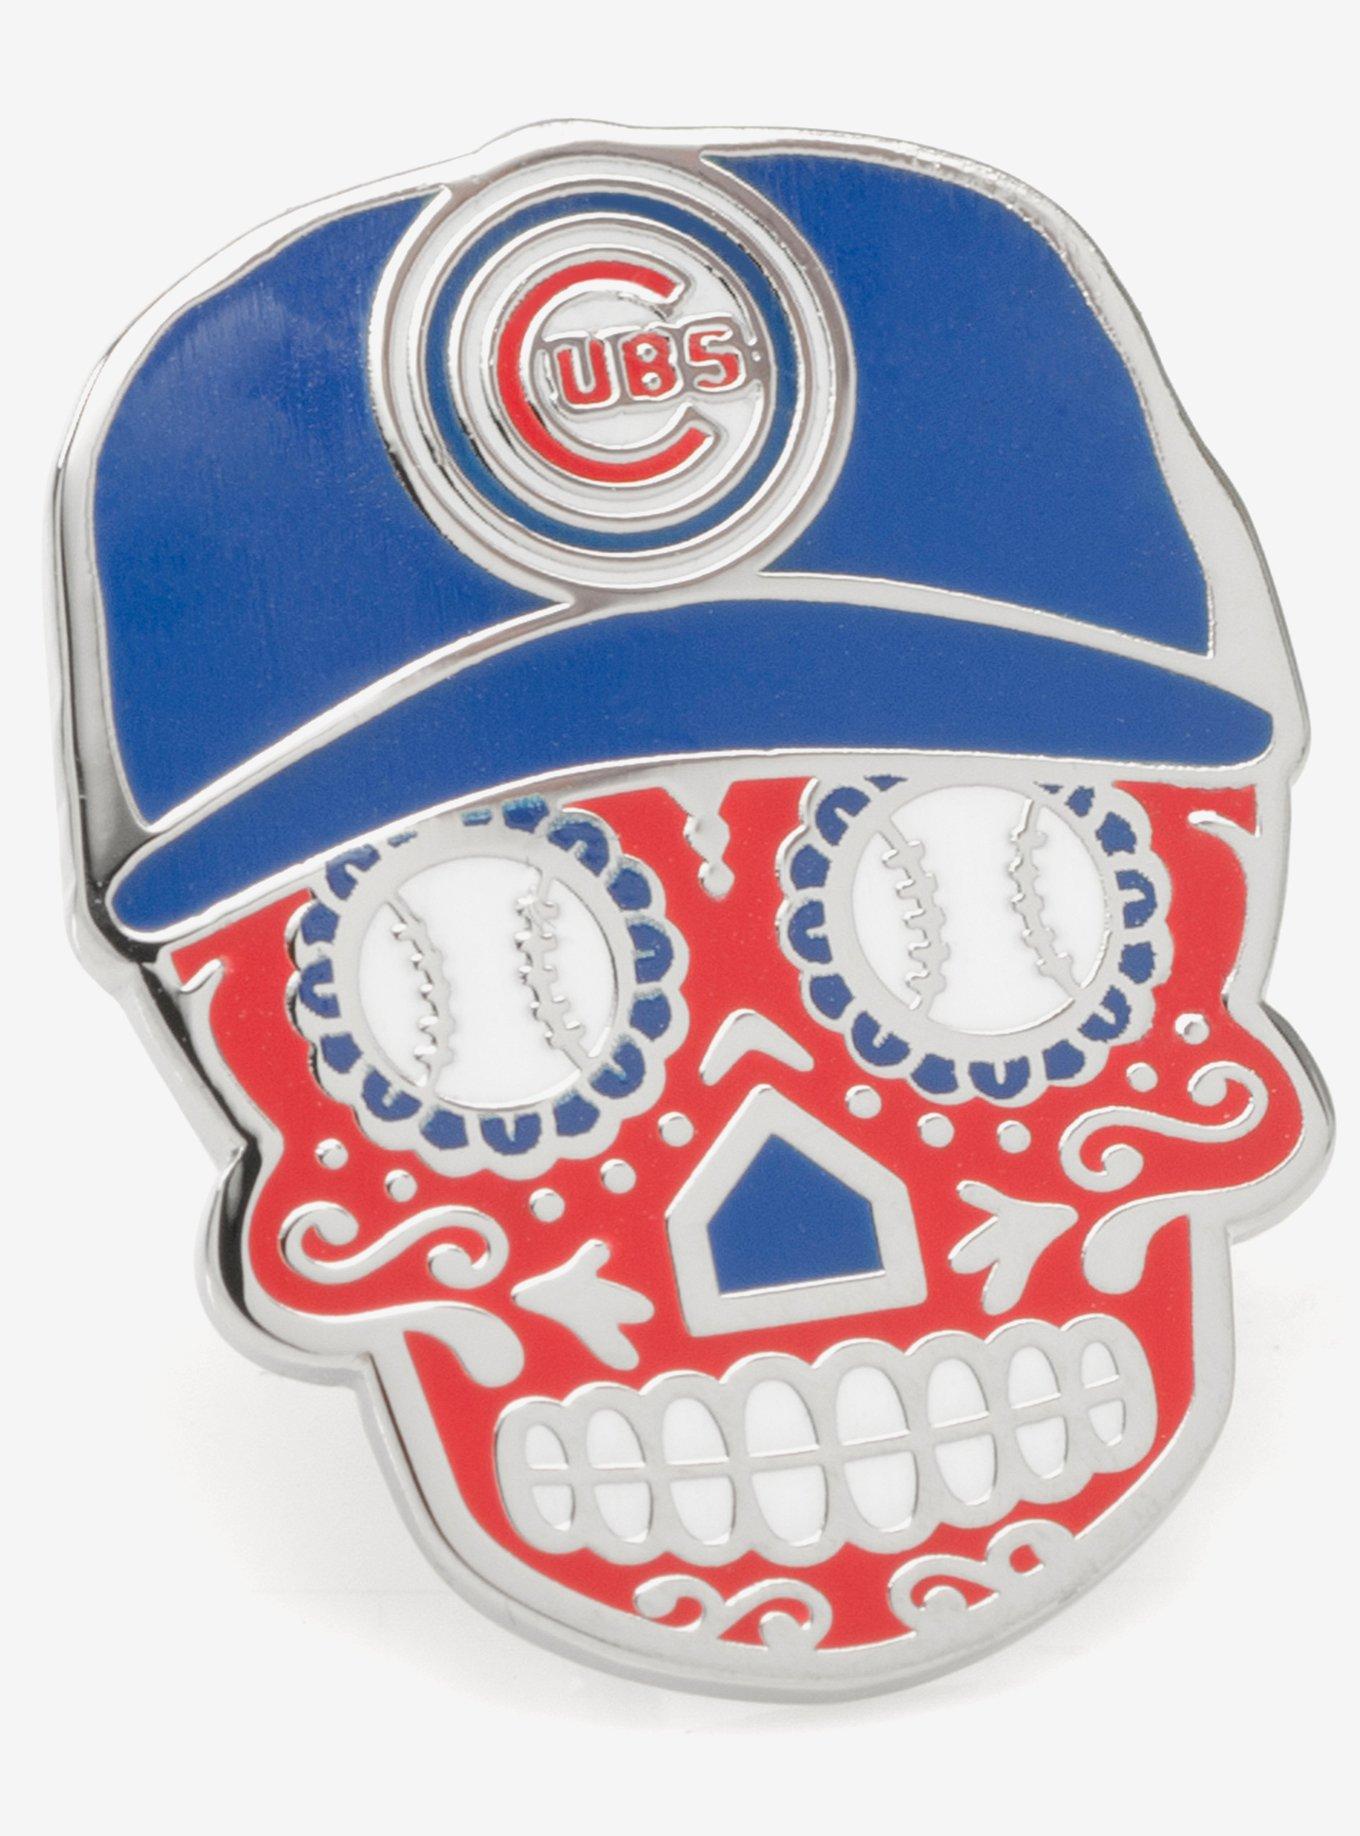 Chicago Cubs Sugar Skull Lapel Pin